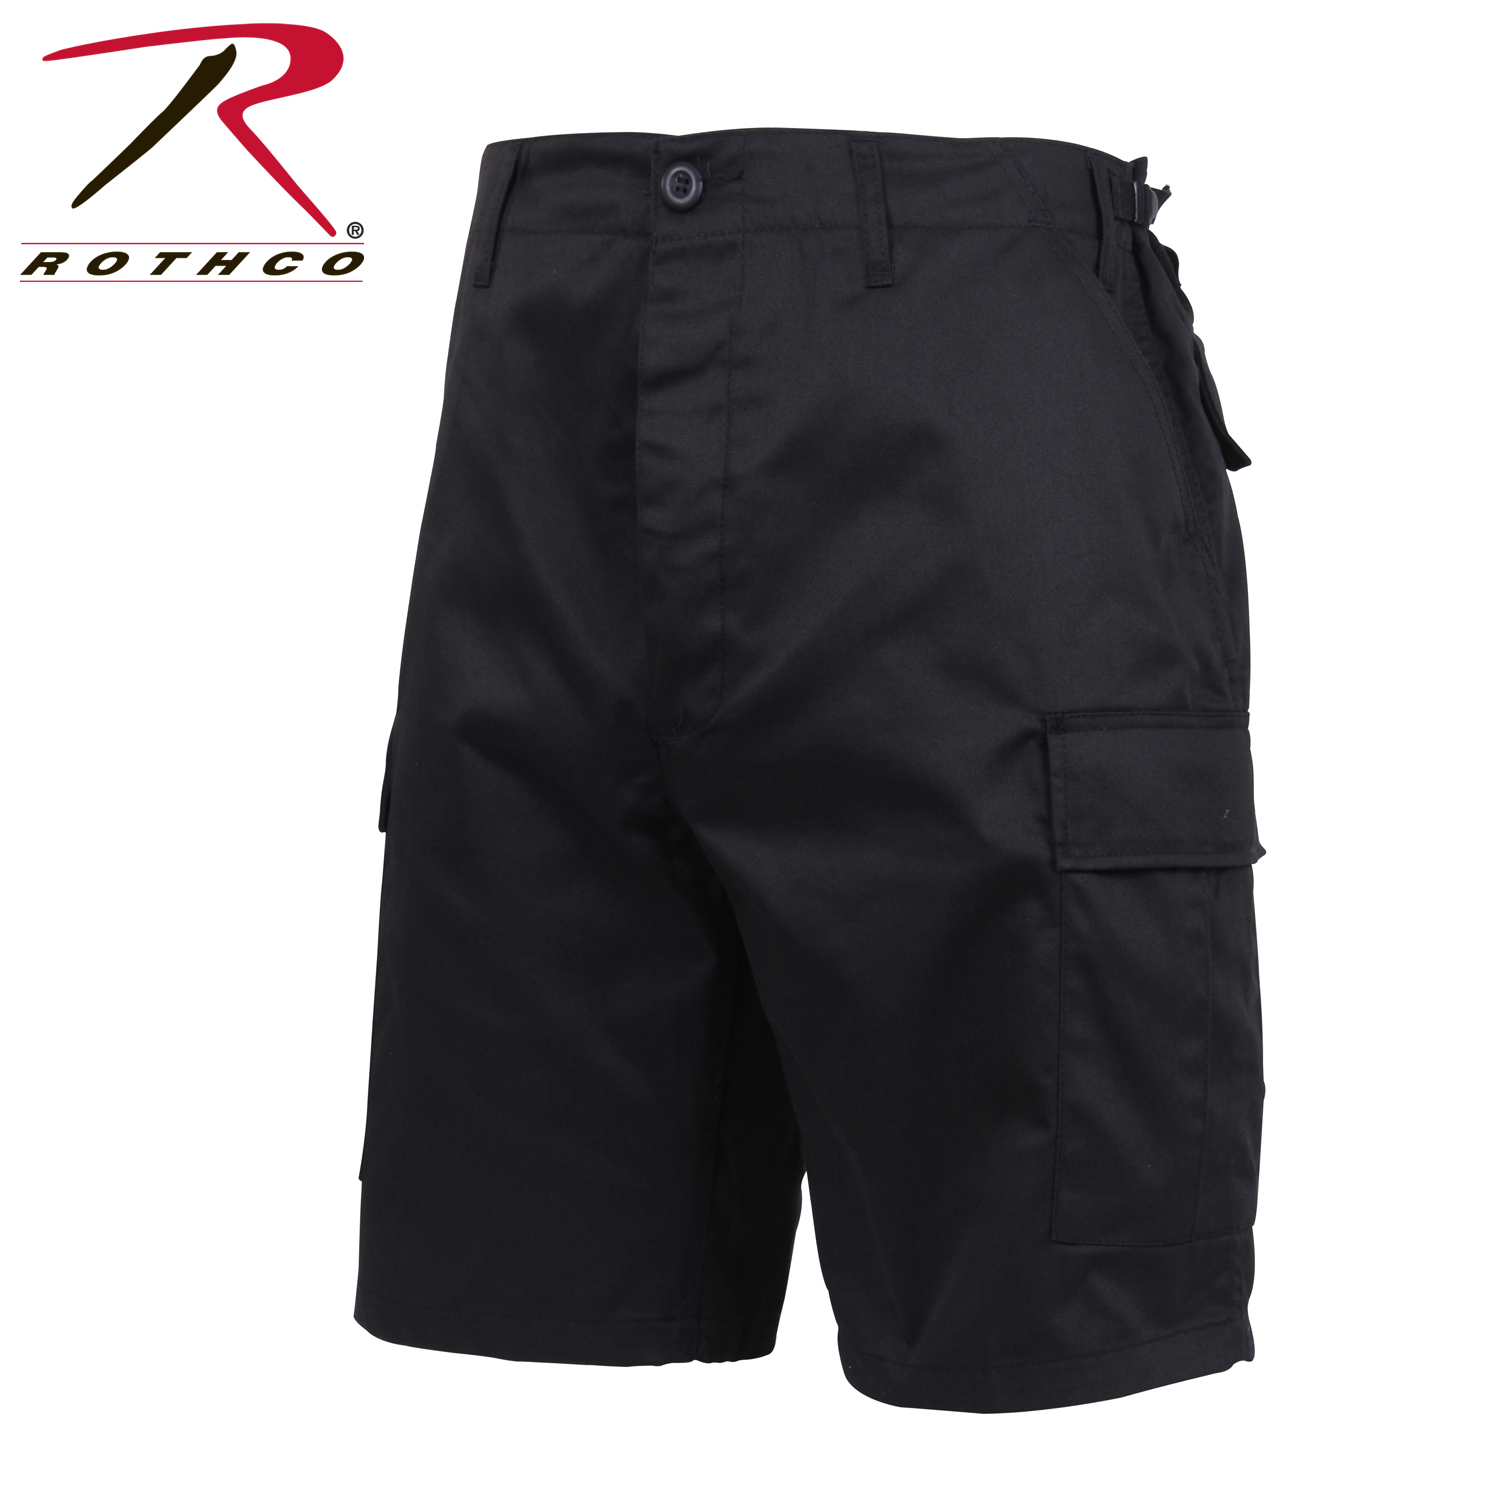 Rothco BDU Combat Shorts